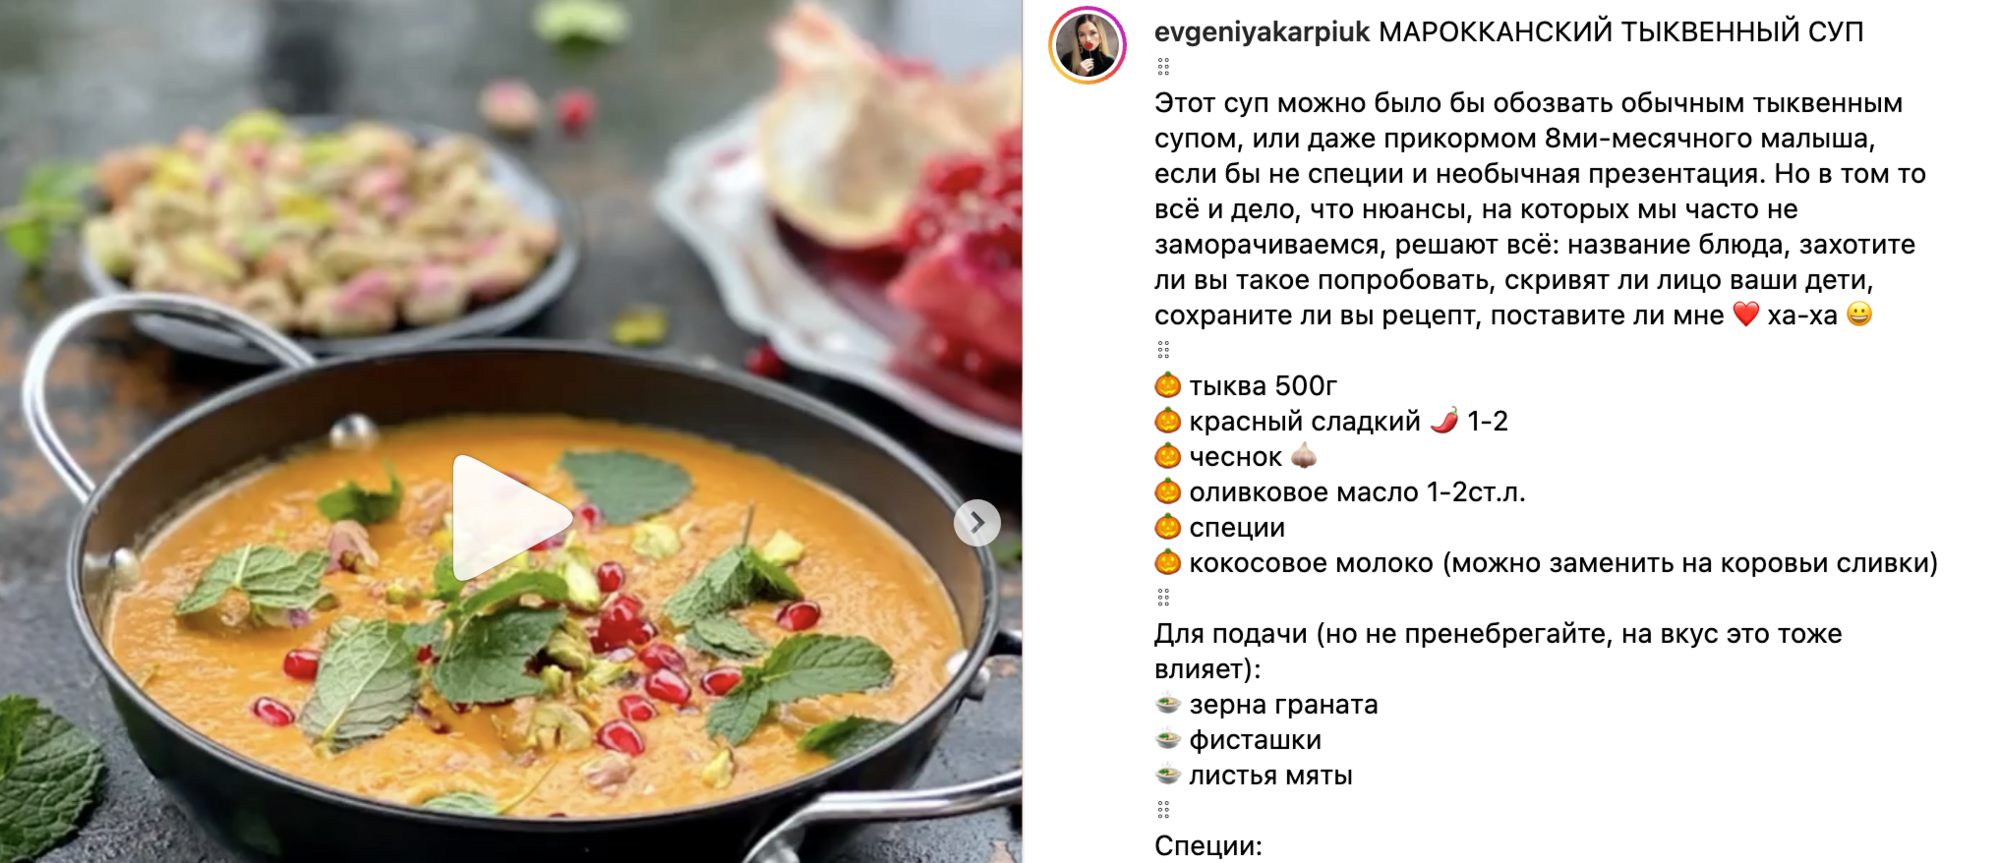 Soup recipe